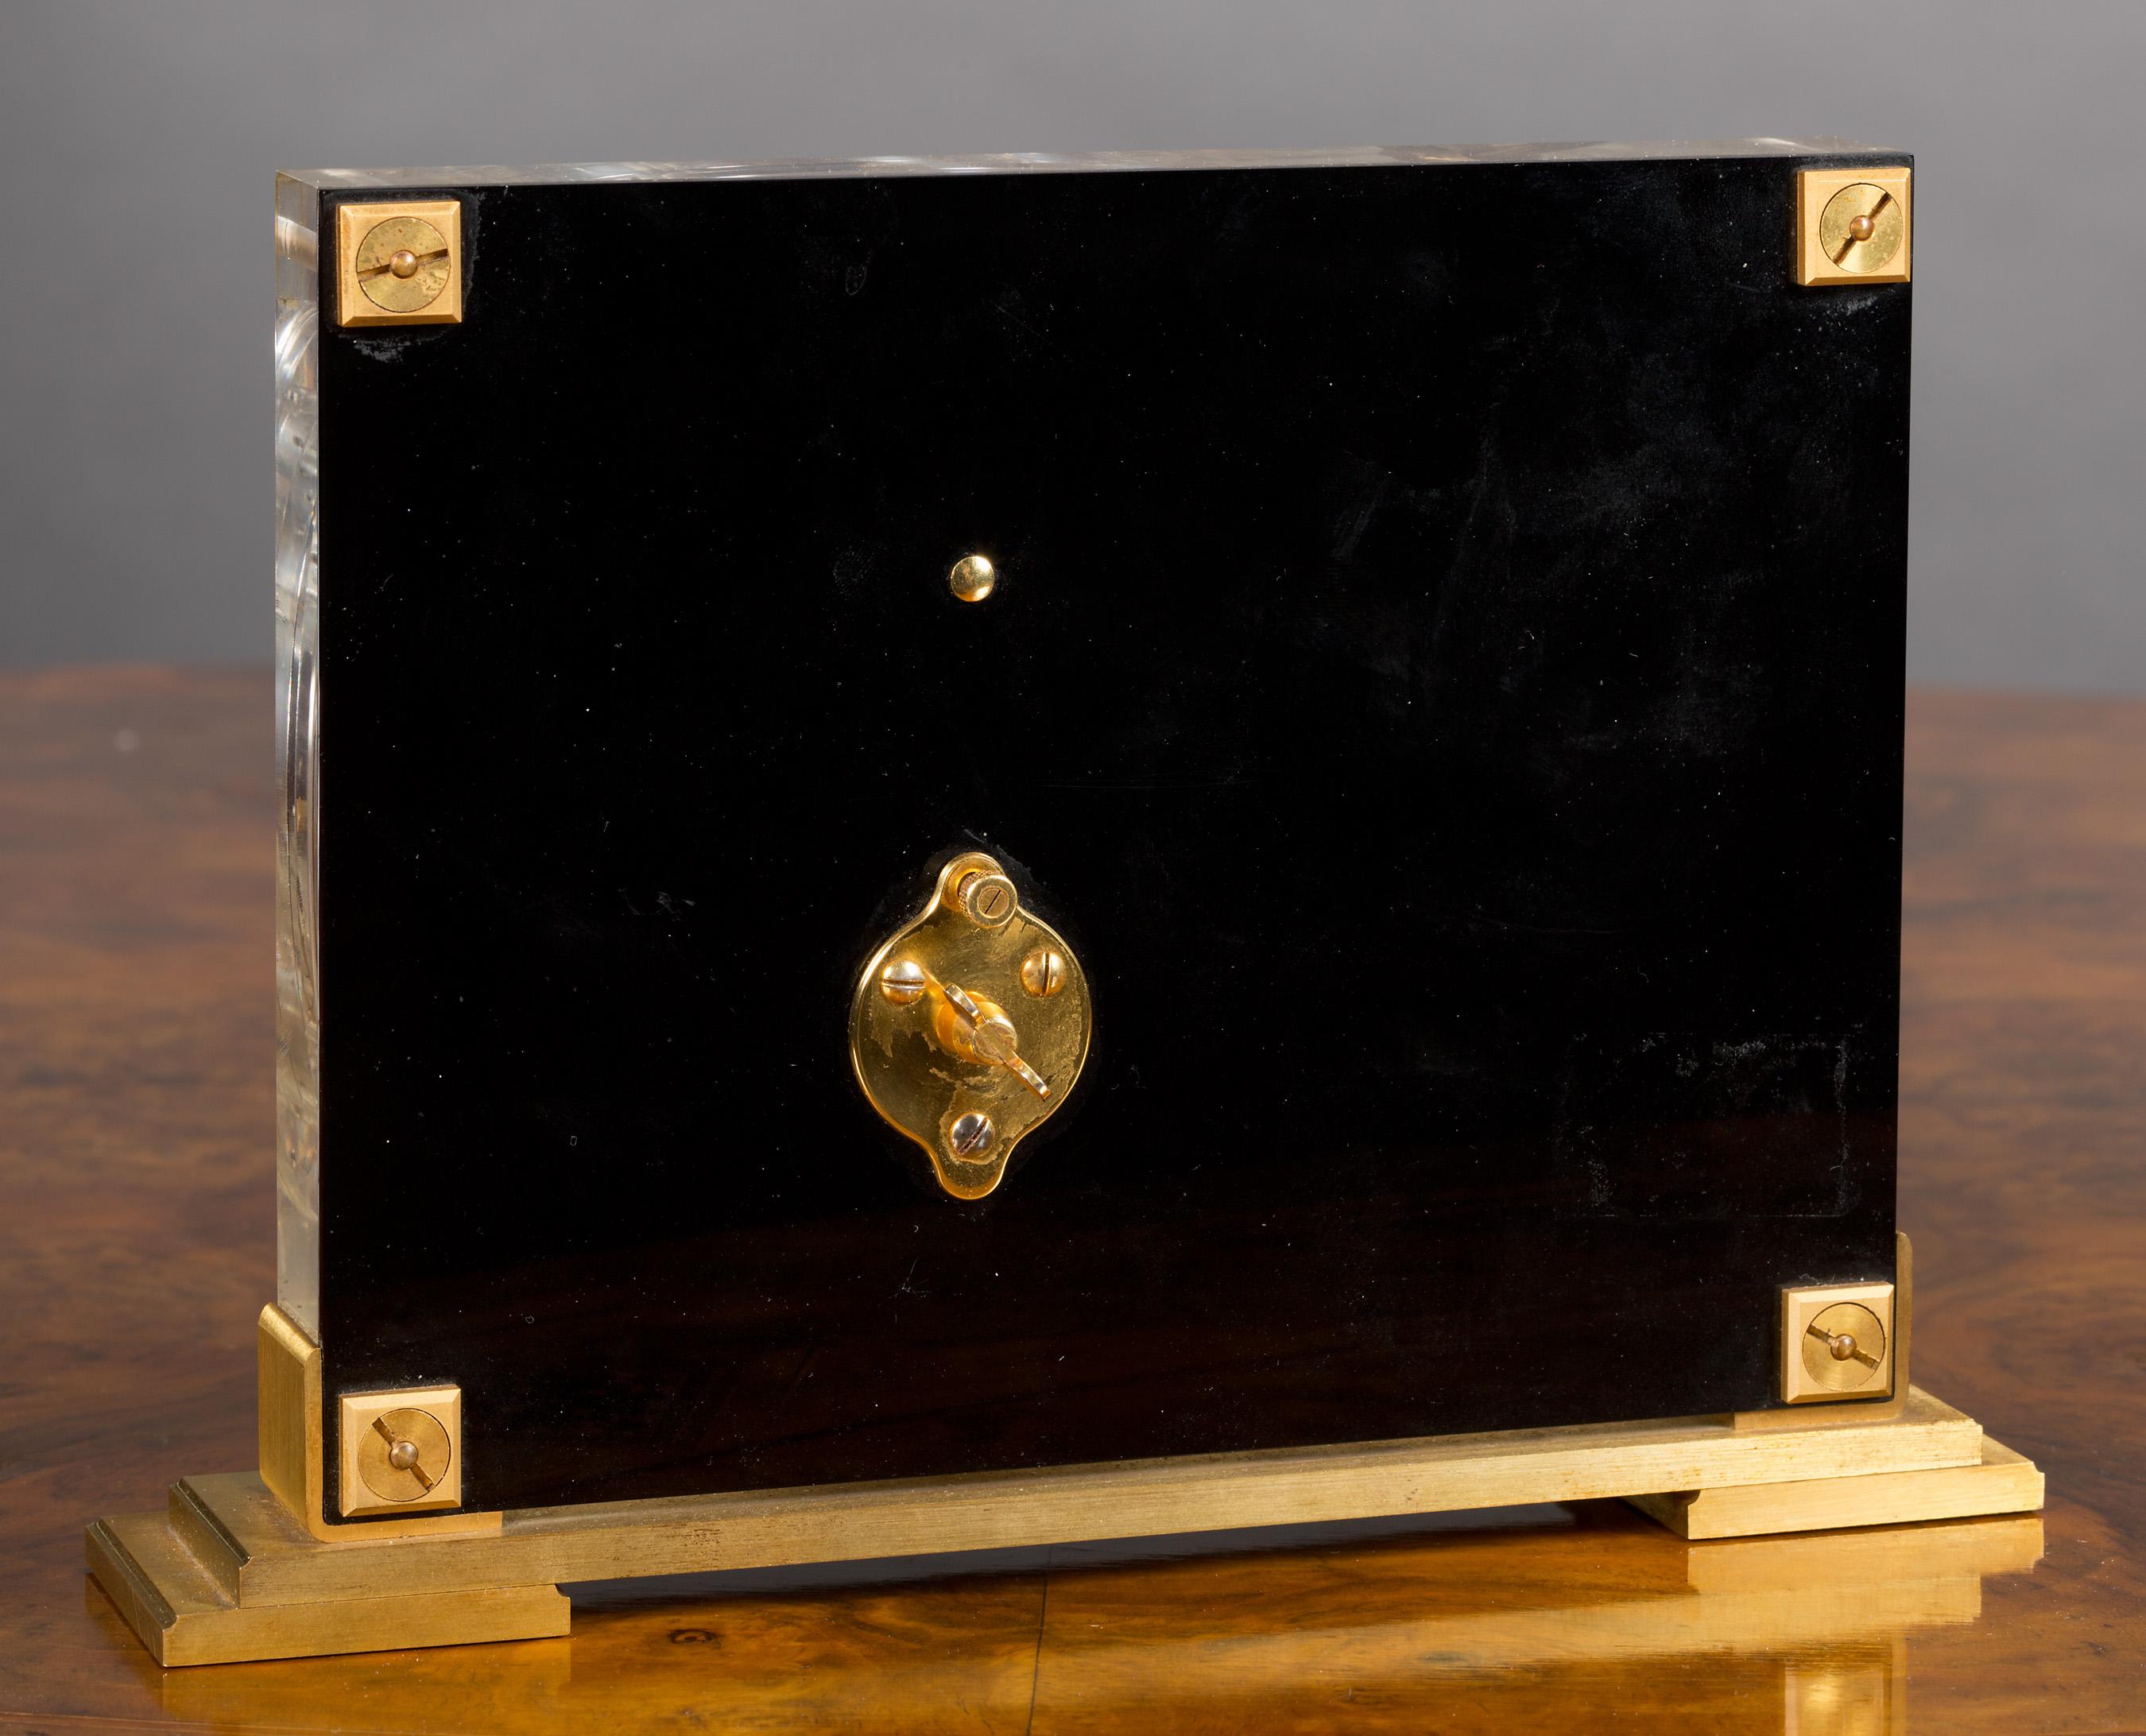 Jaeger-LeCoultre Mystery Clock in einem Lucite-Gehäuse mit wunderschönem Chinoiserie-Dekor, das einen Vogel im Flug zeigt und auf einem vergoldeten Stufensockel steht.

Acht-Tage-Uhrwerk 'in line' von Jaeger-LeCoultre mit Stabindexen und